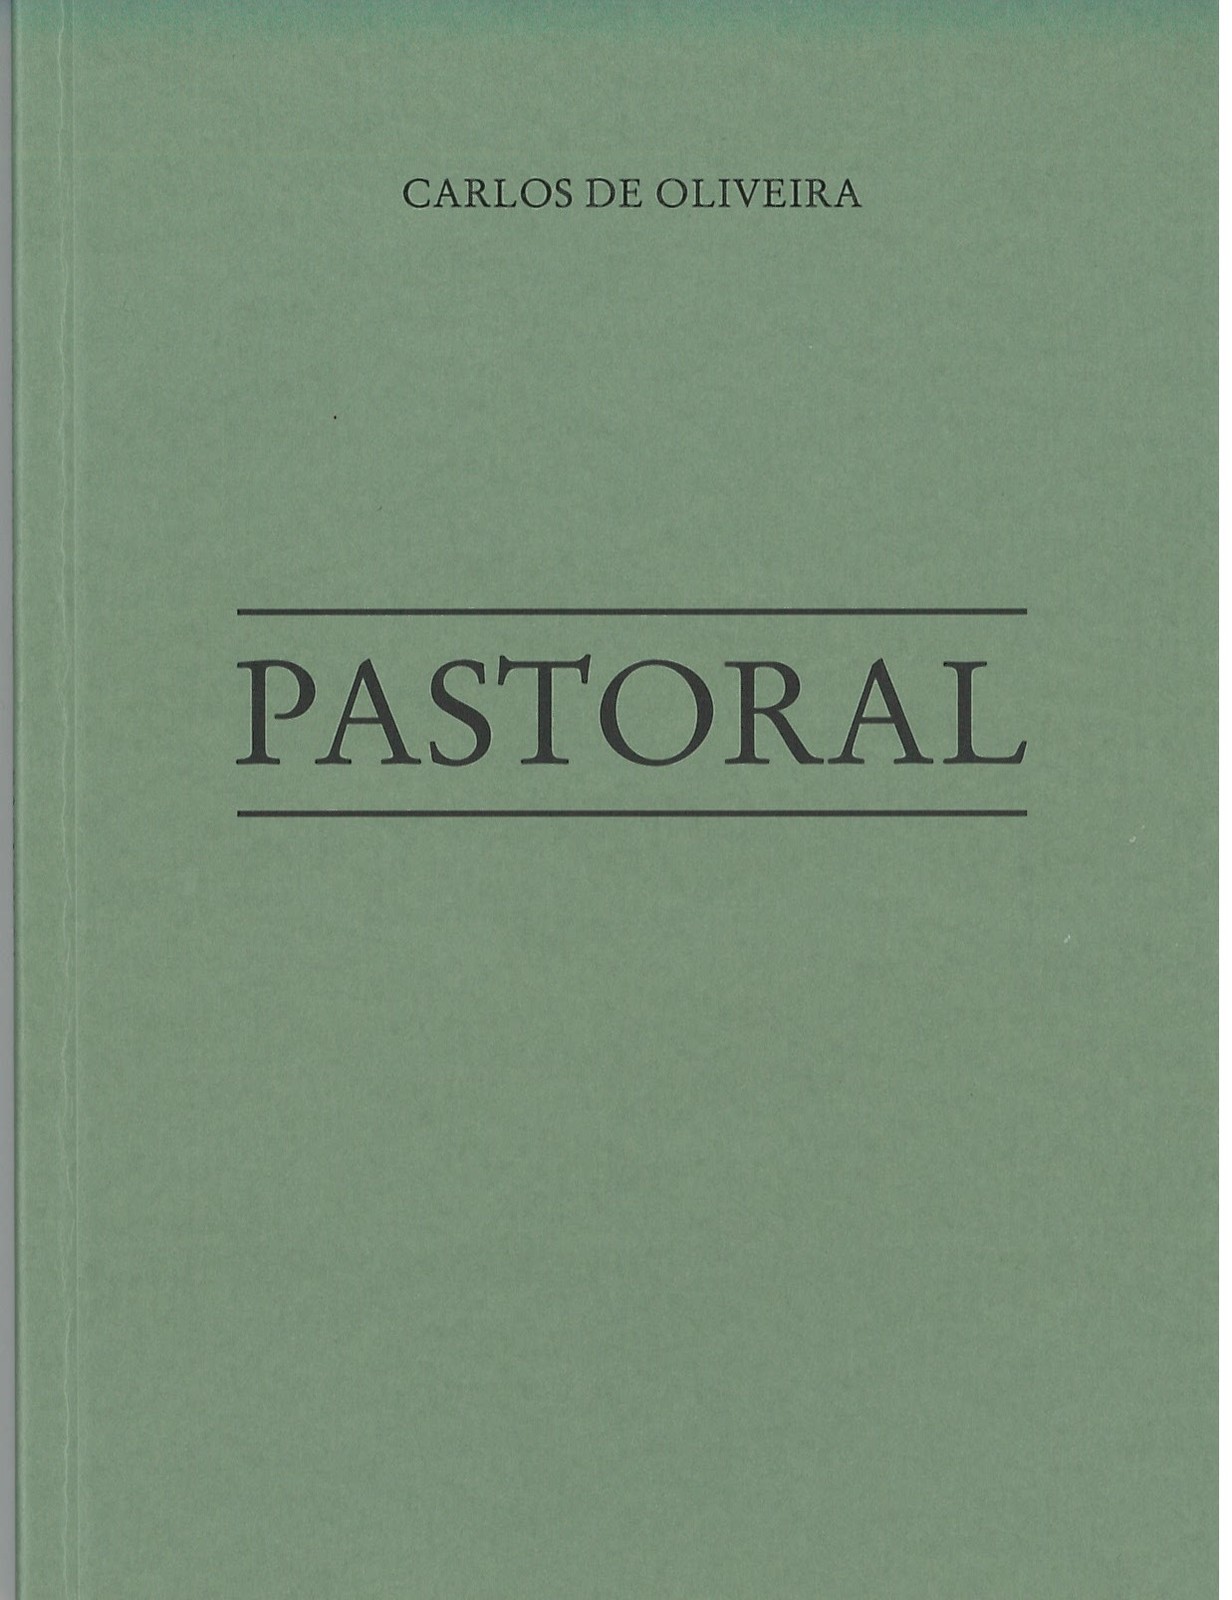 Carlos de Oliveira - Pastoral